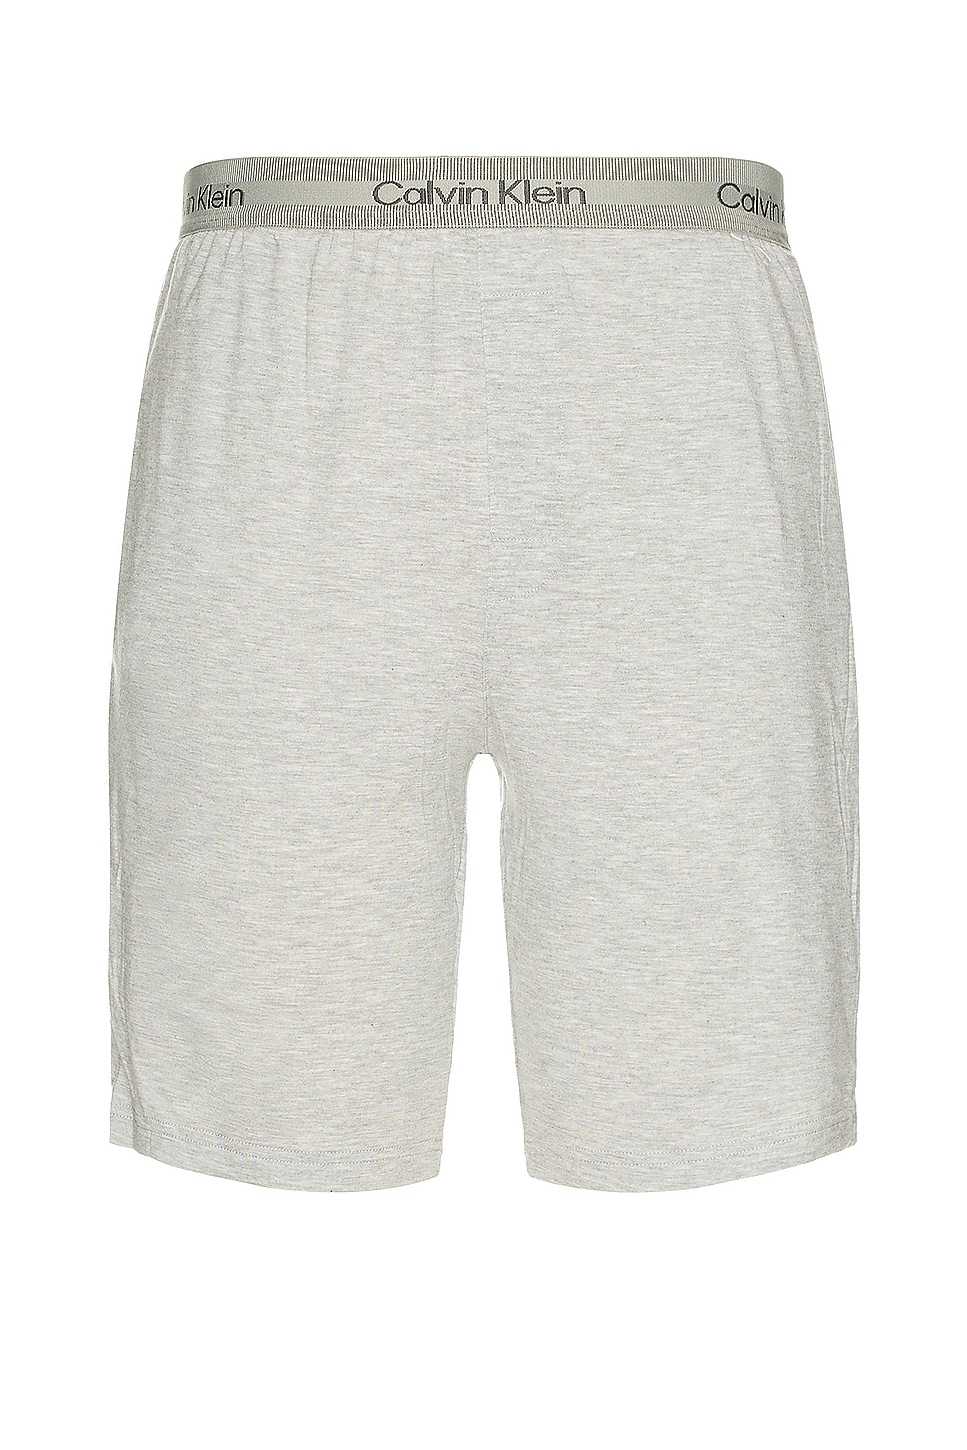 Image 1 of Calvin Klein Underwear Sleep Short in Grey Heather